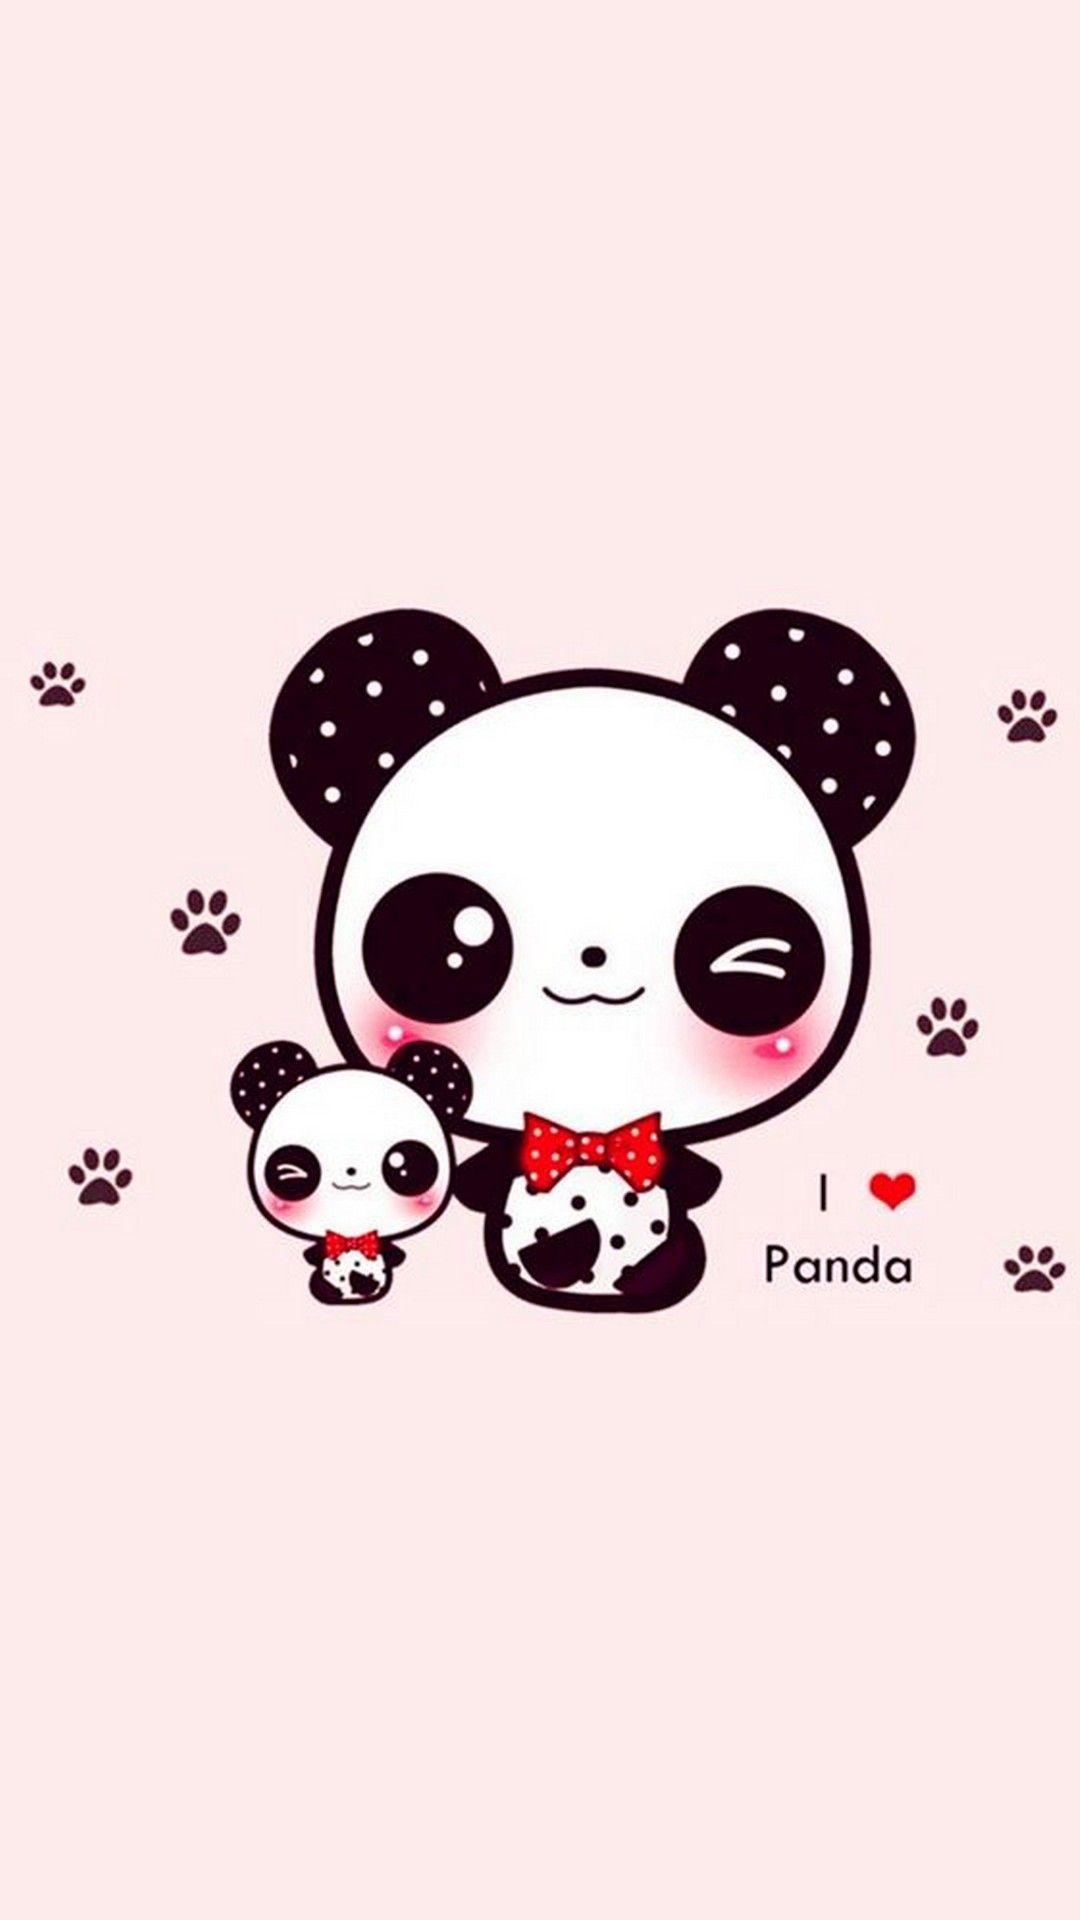 Cute Panda Wallpaper For iPhone iPhone Wallpaper